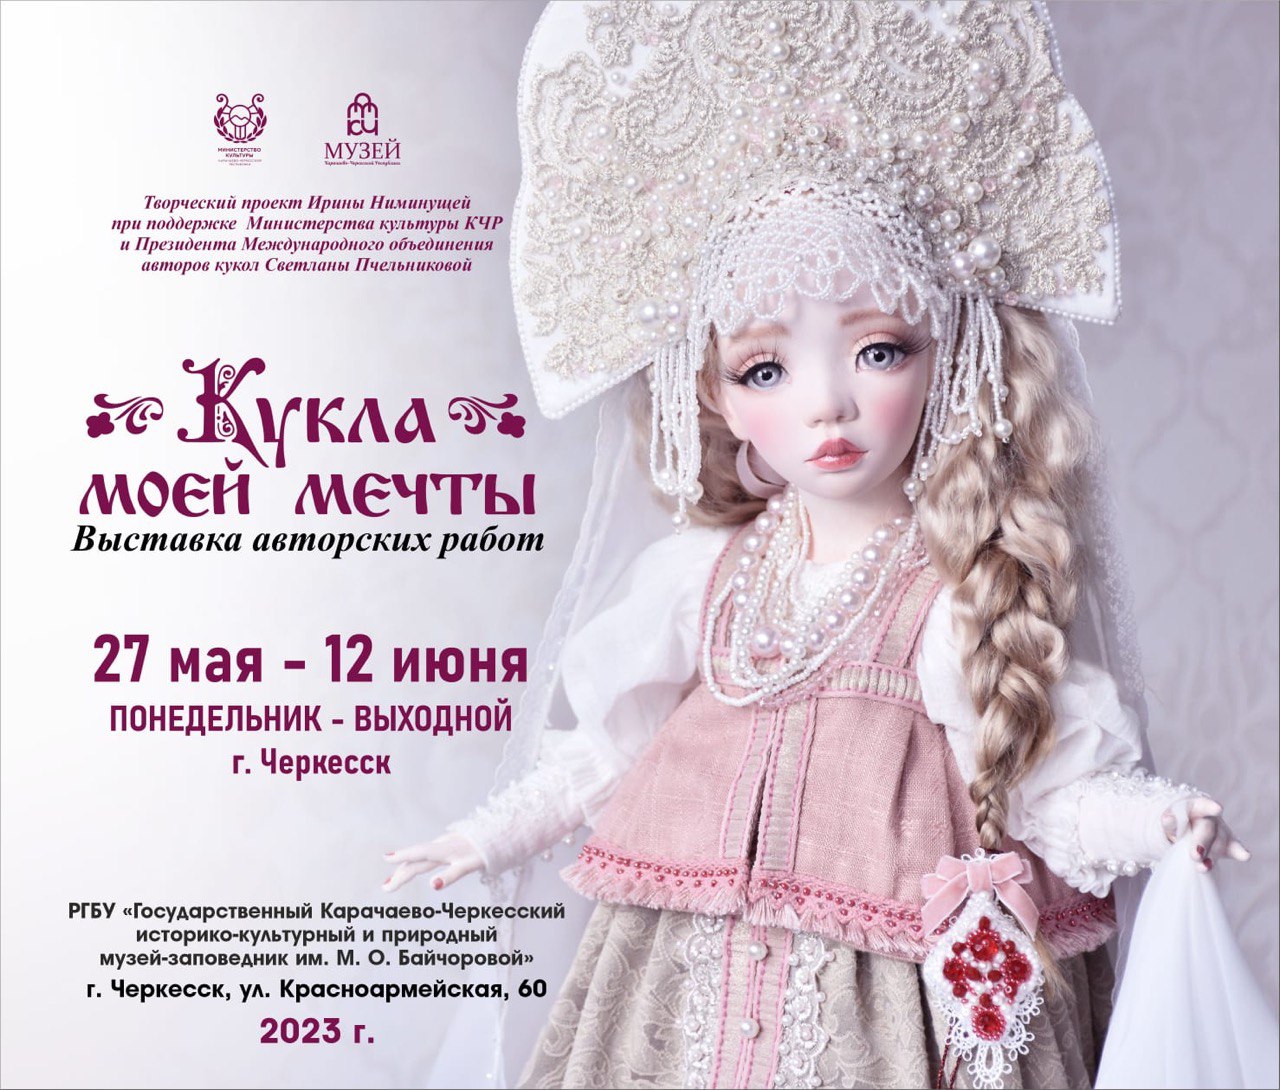 В столице Карачаево-Черкесии пройдет выставка «Кукла моей мечты»